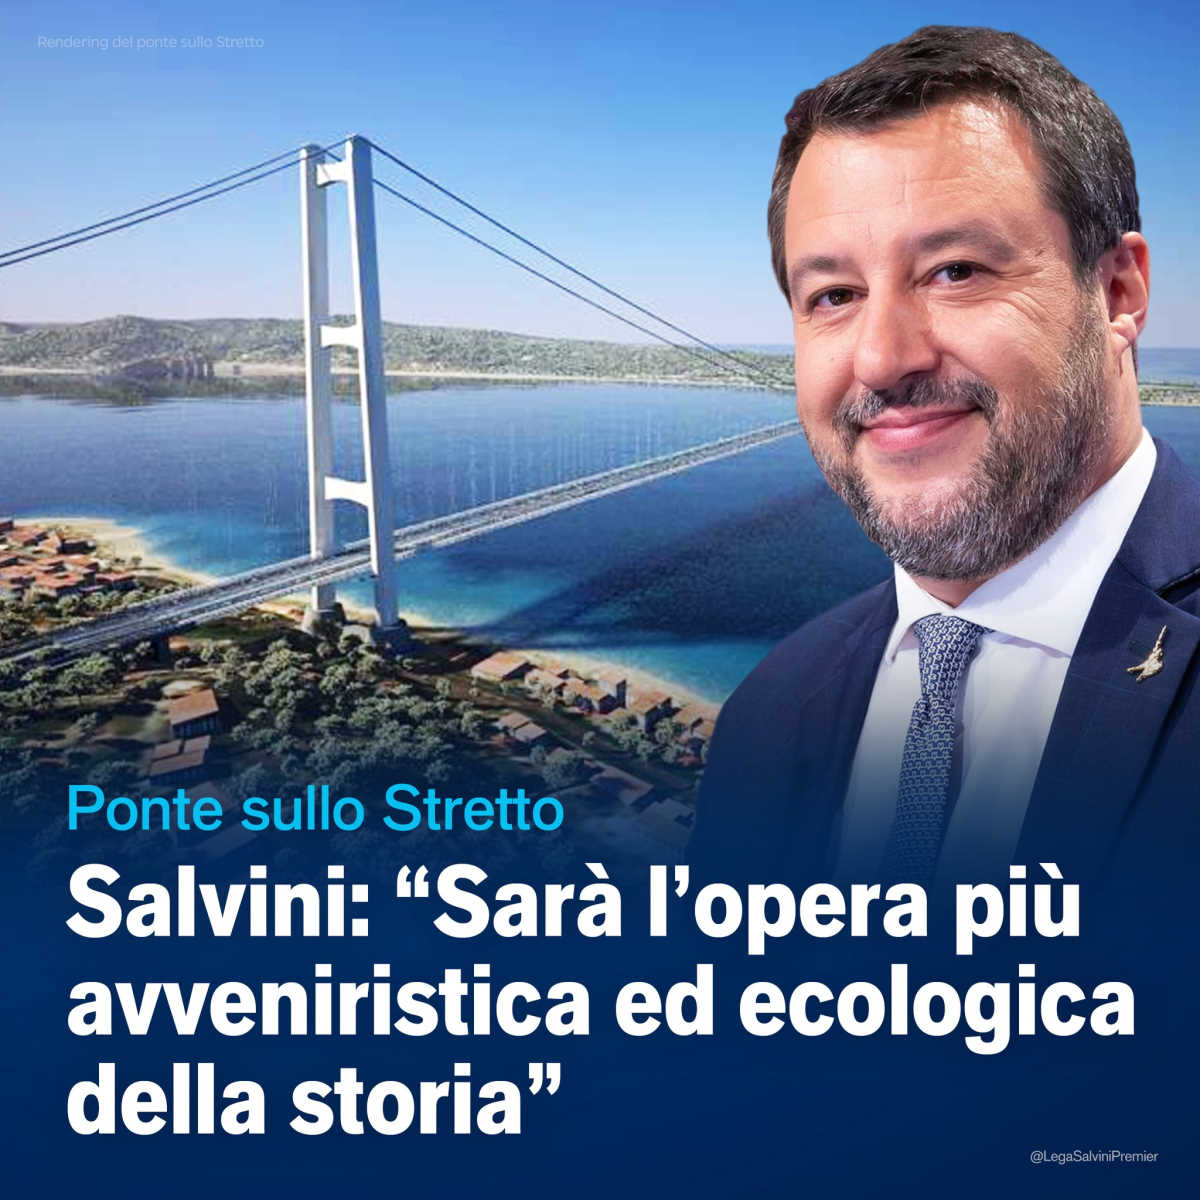 Salvini adesso vuole costruire il ponte sullo Stretto, un progetto che nel 2016 diceva che non stava in piedi